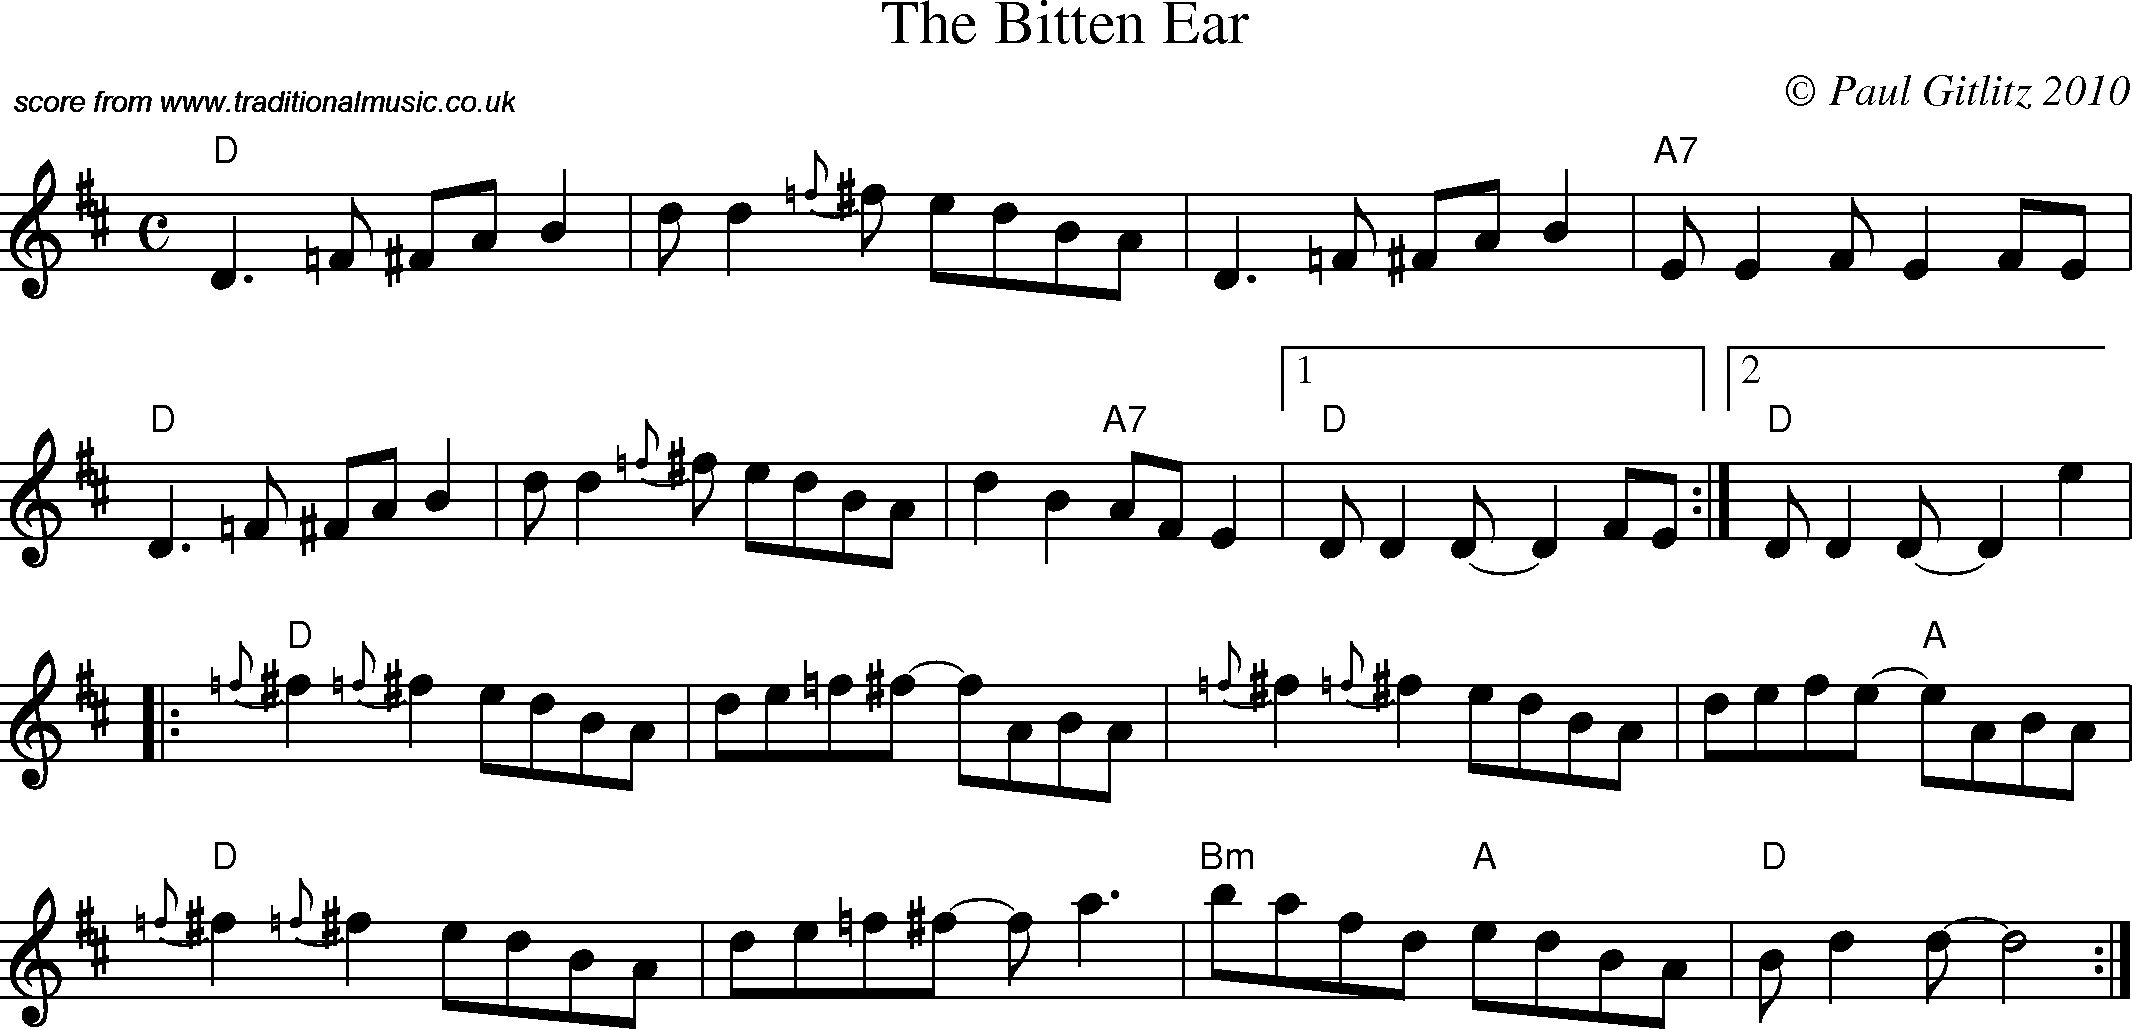 Sheet Music Score for Reel - Bitten Ear, The